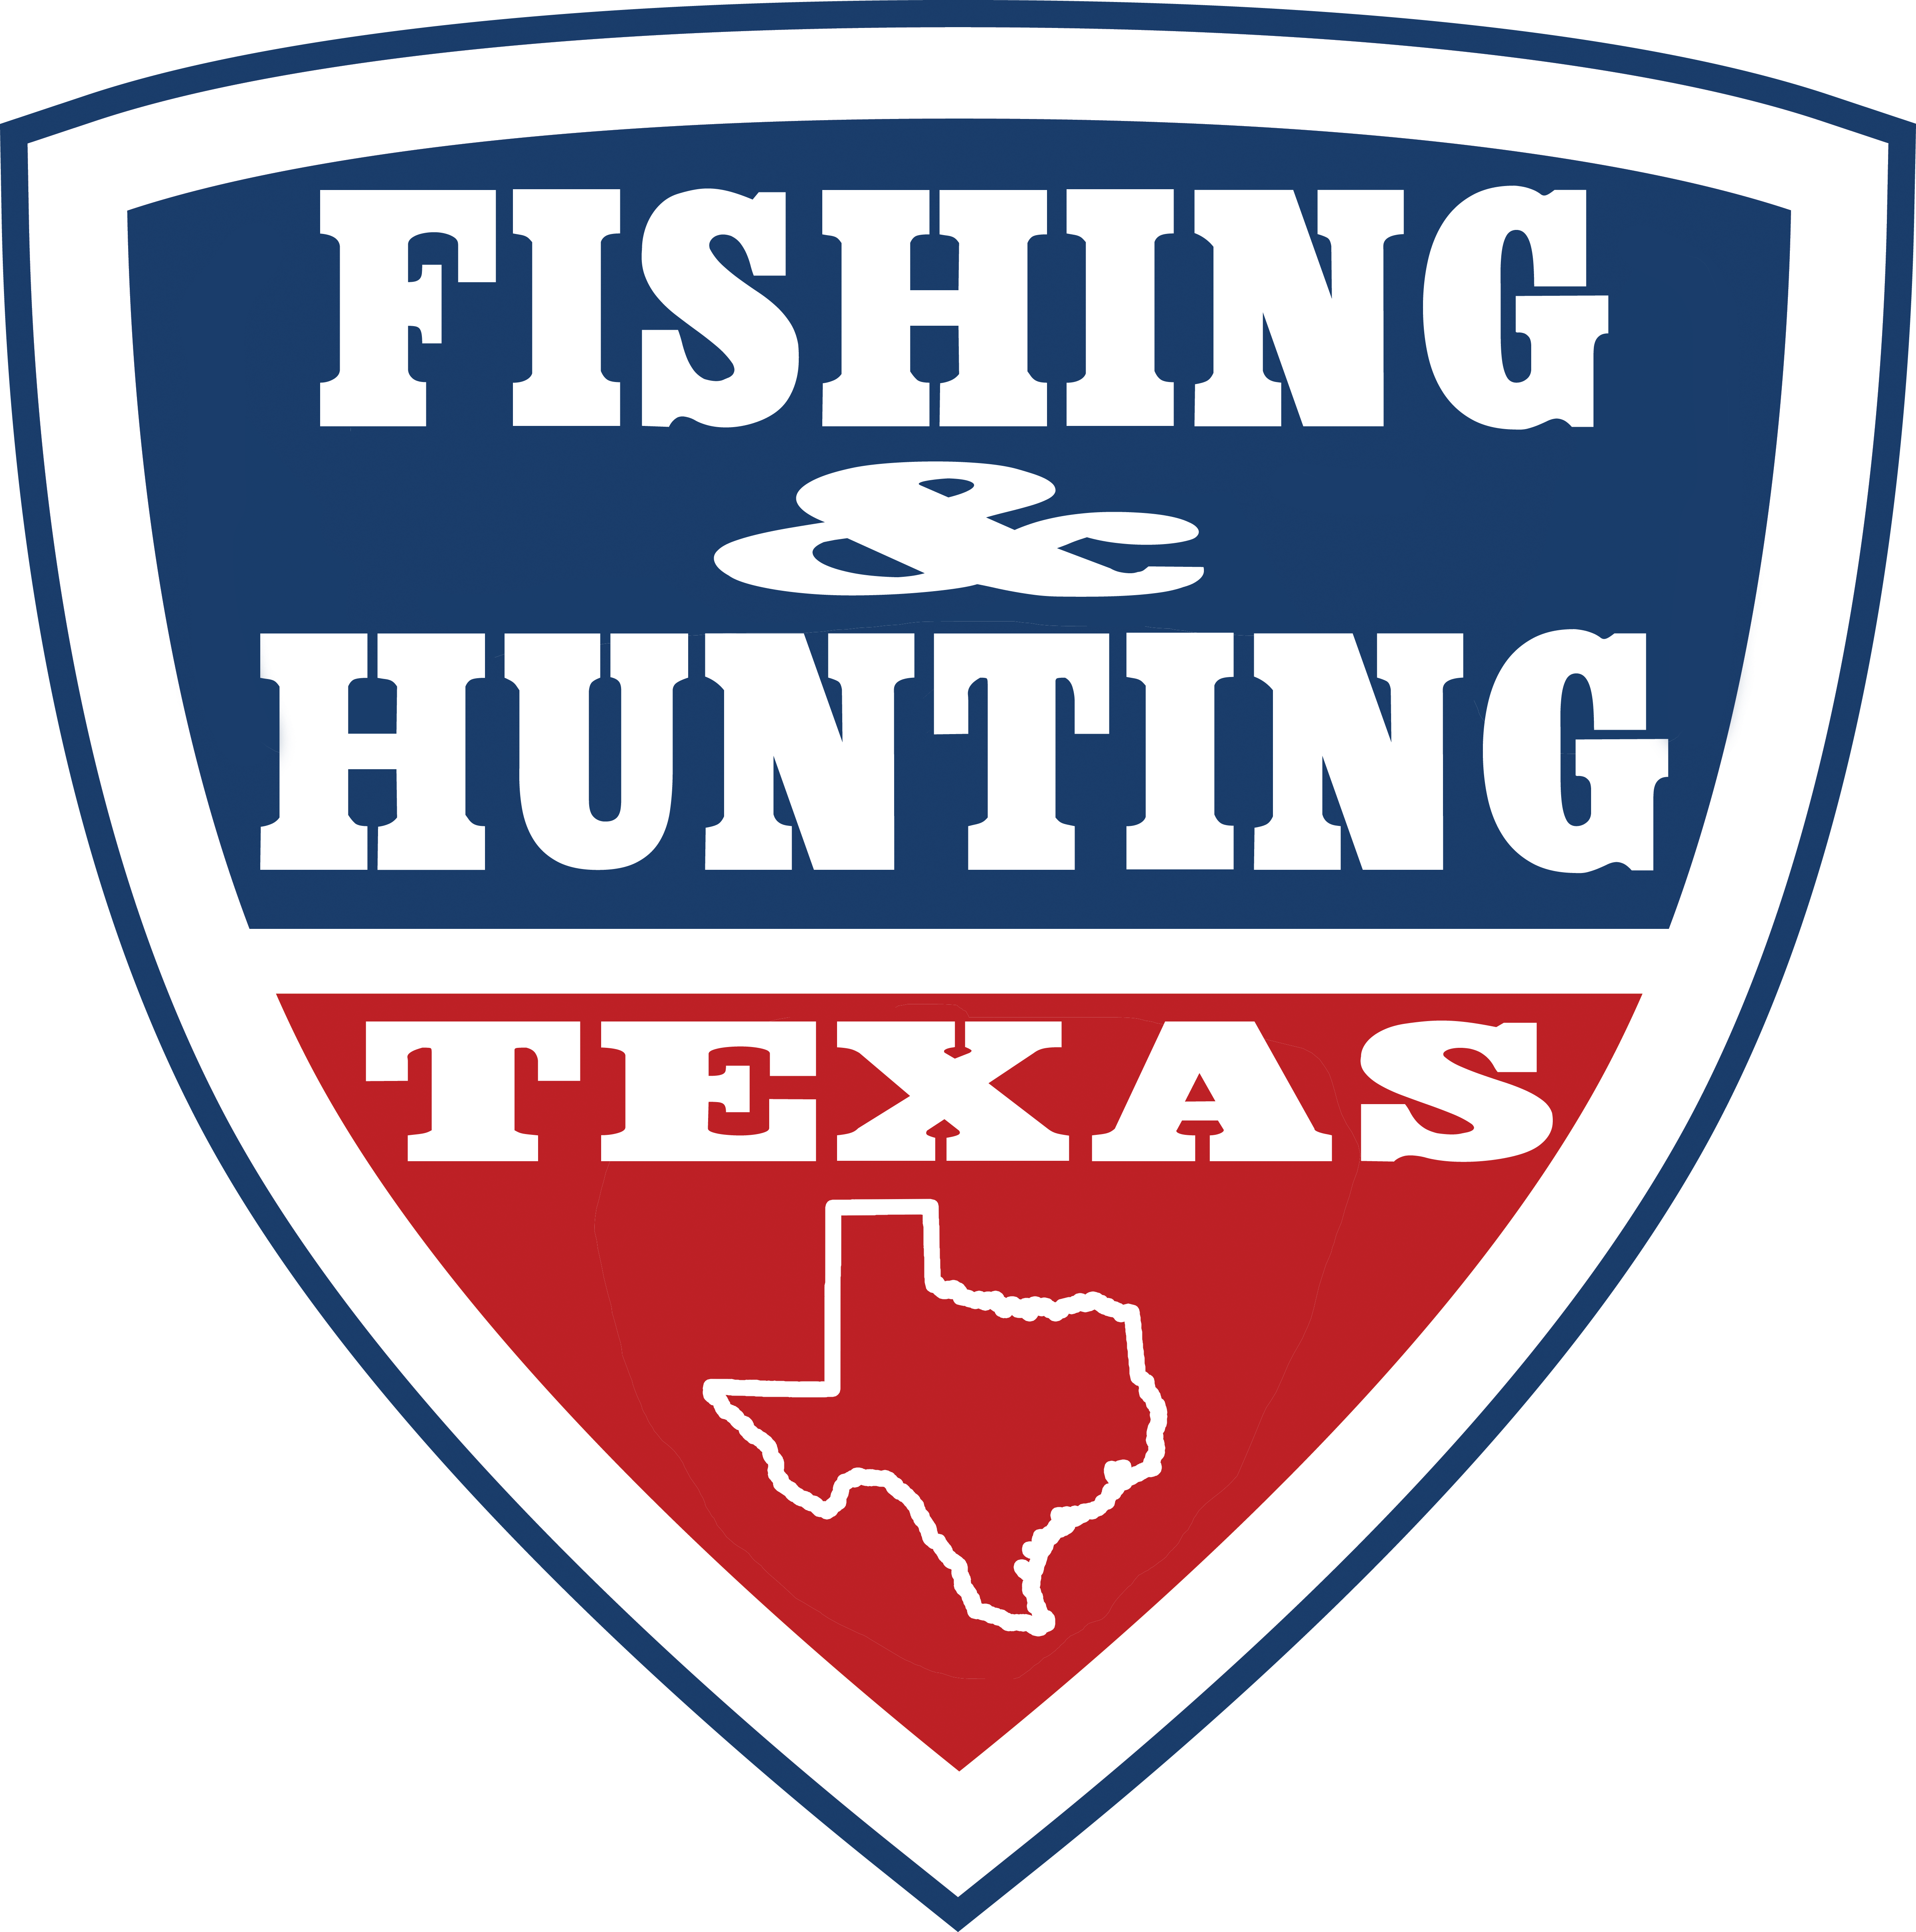 Fishing & Hunting Texas